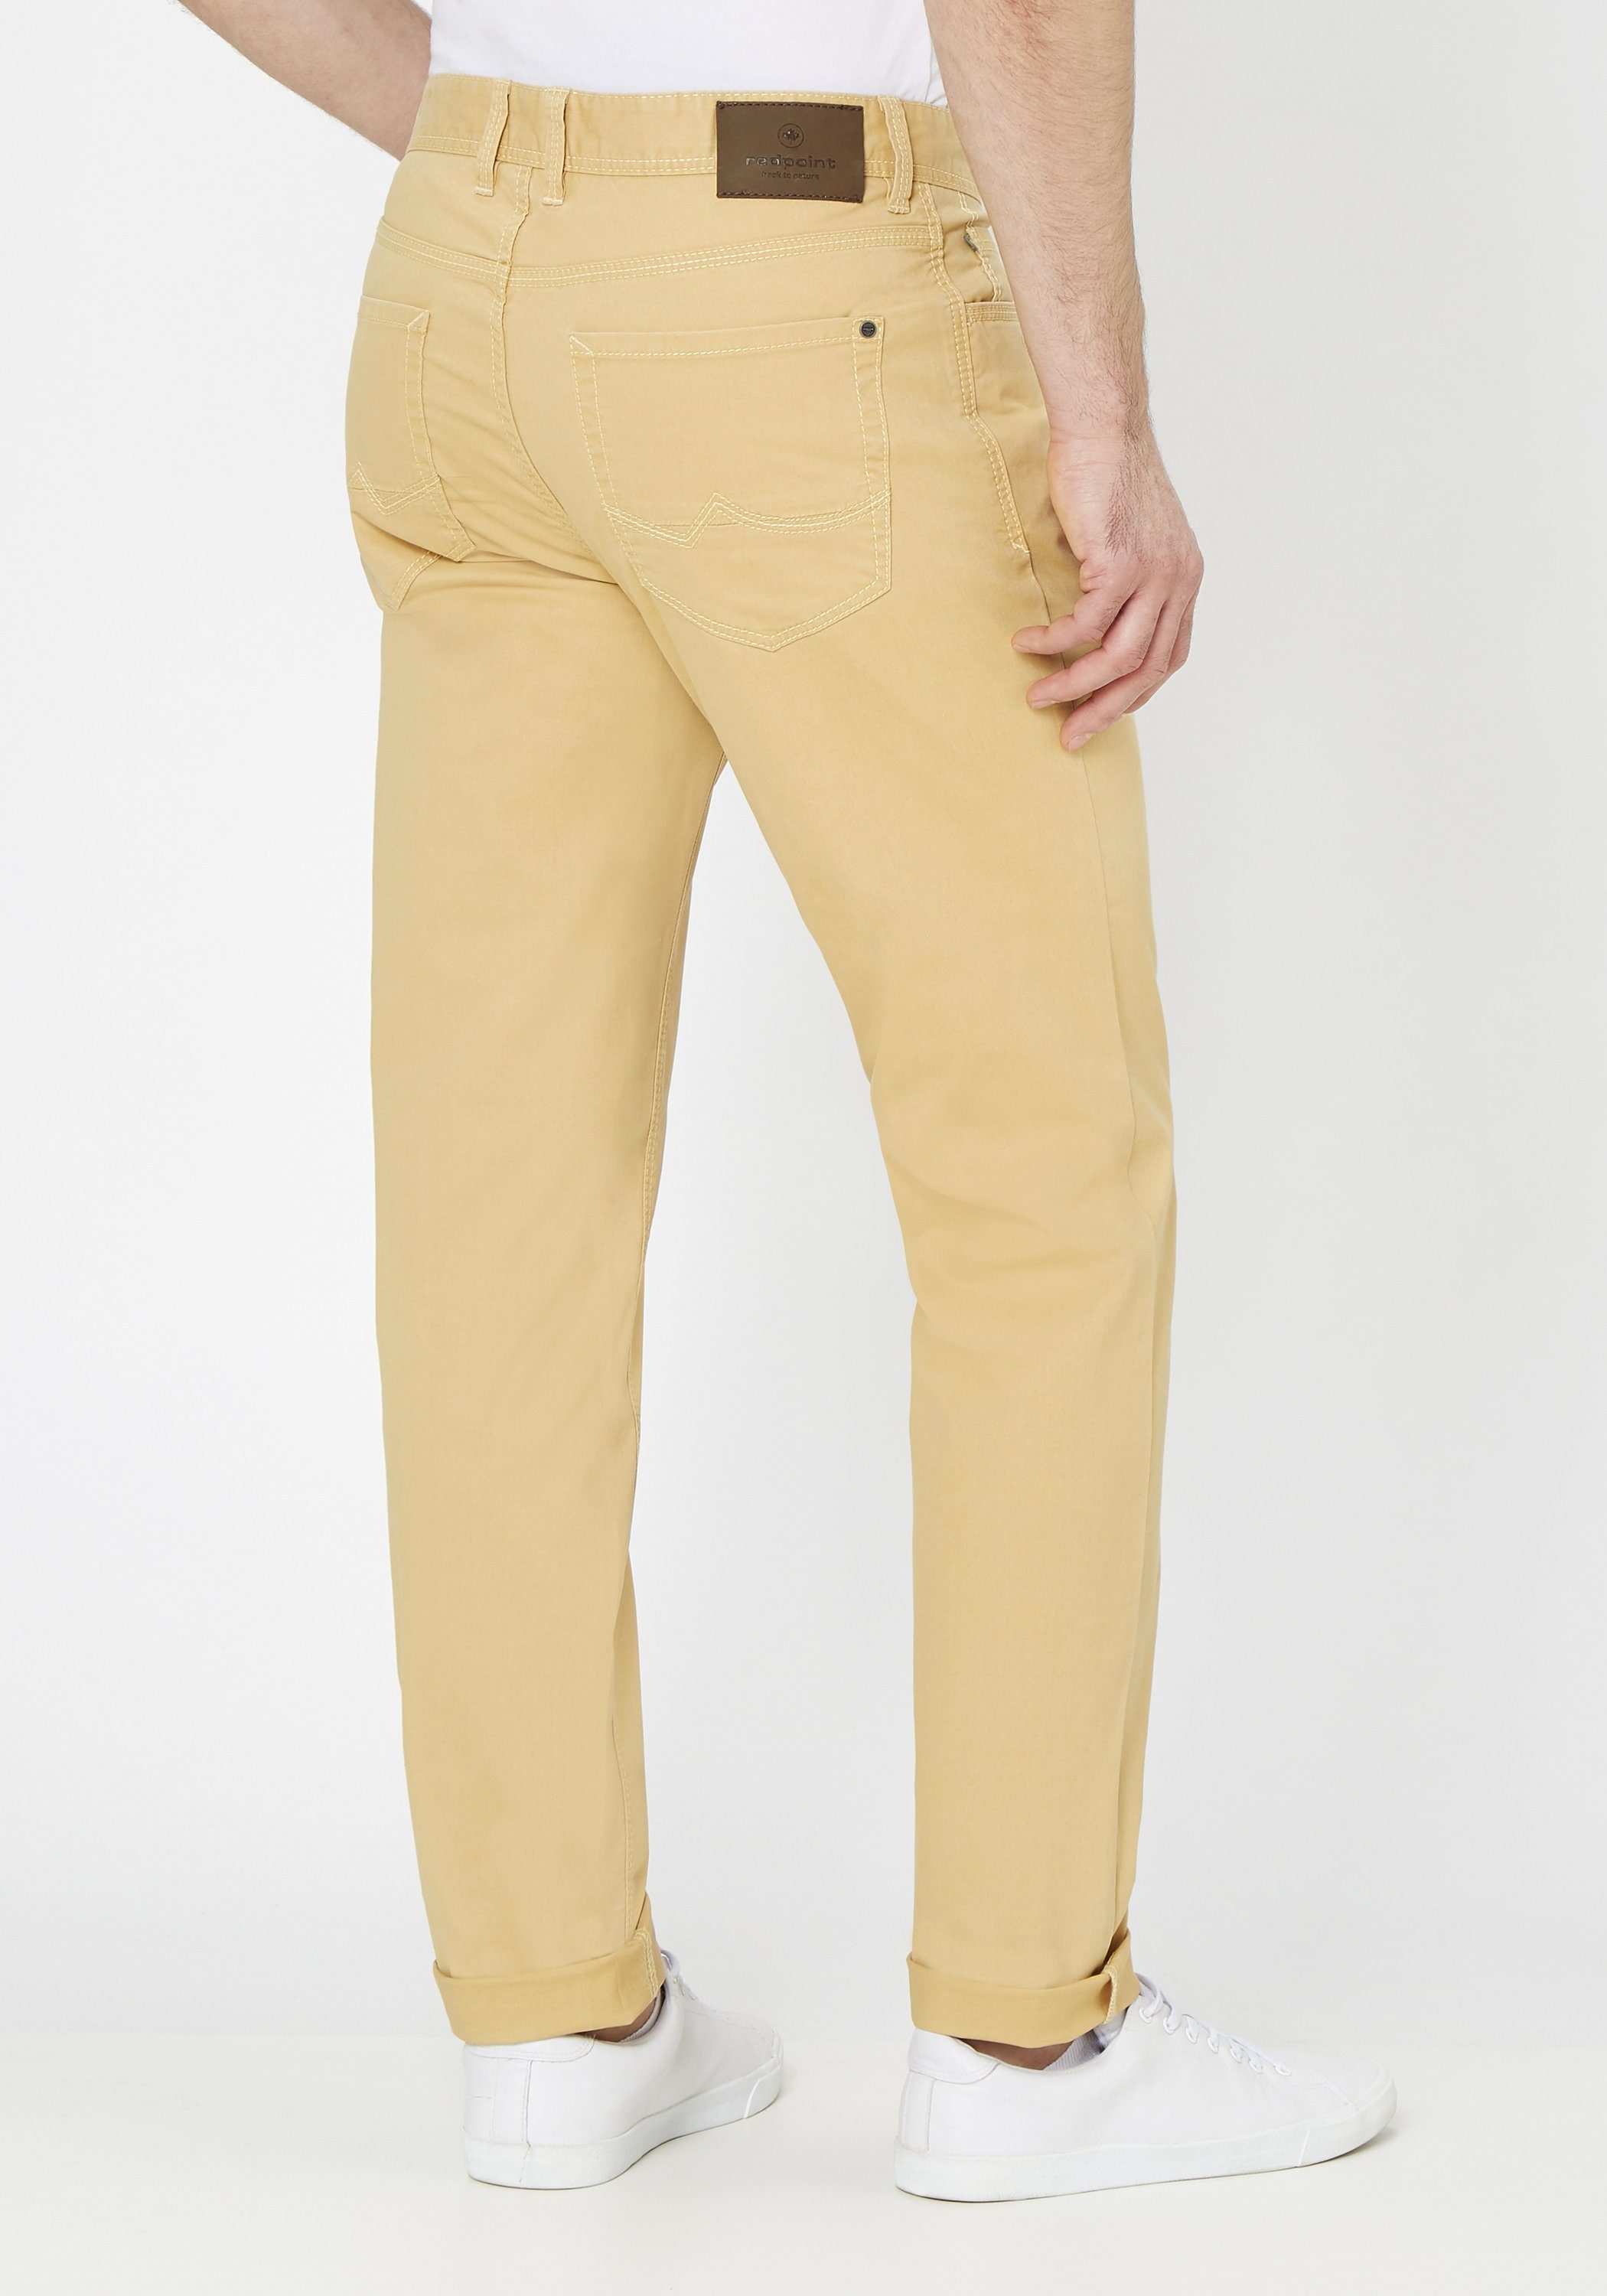 Pocket Redpoint yellow stretch MILTON aus Stoffhose nachaltiger super 5 Baumwolle